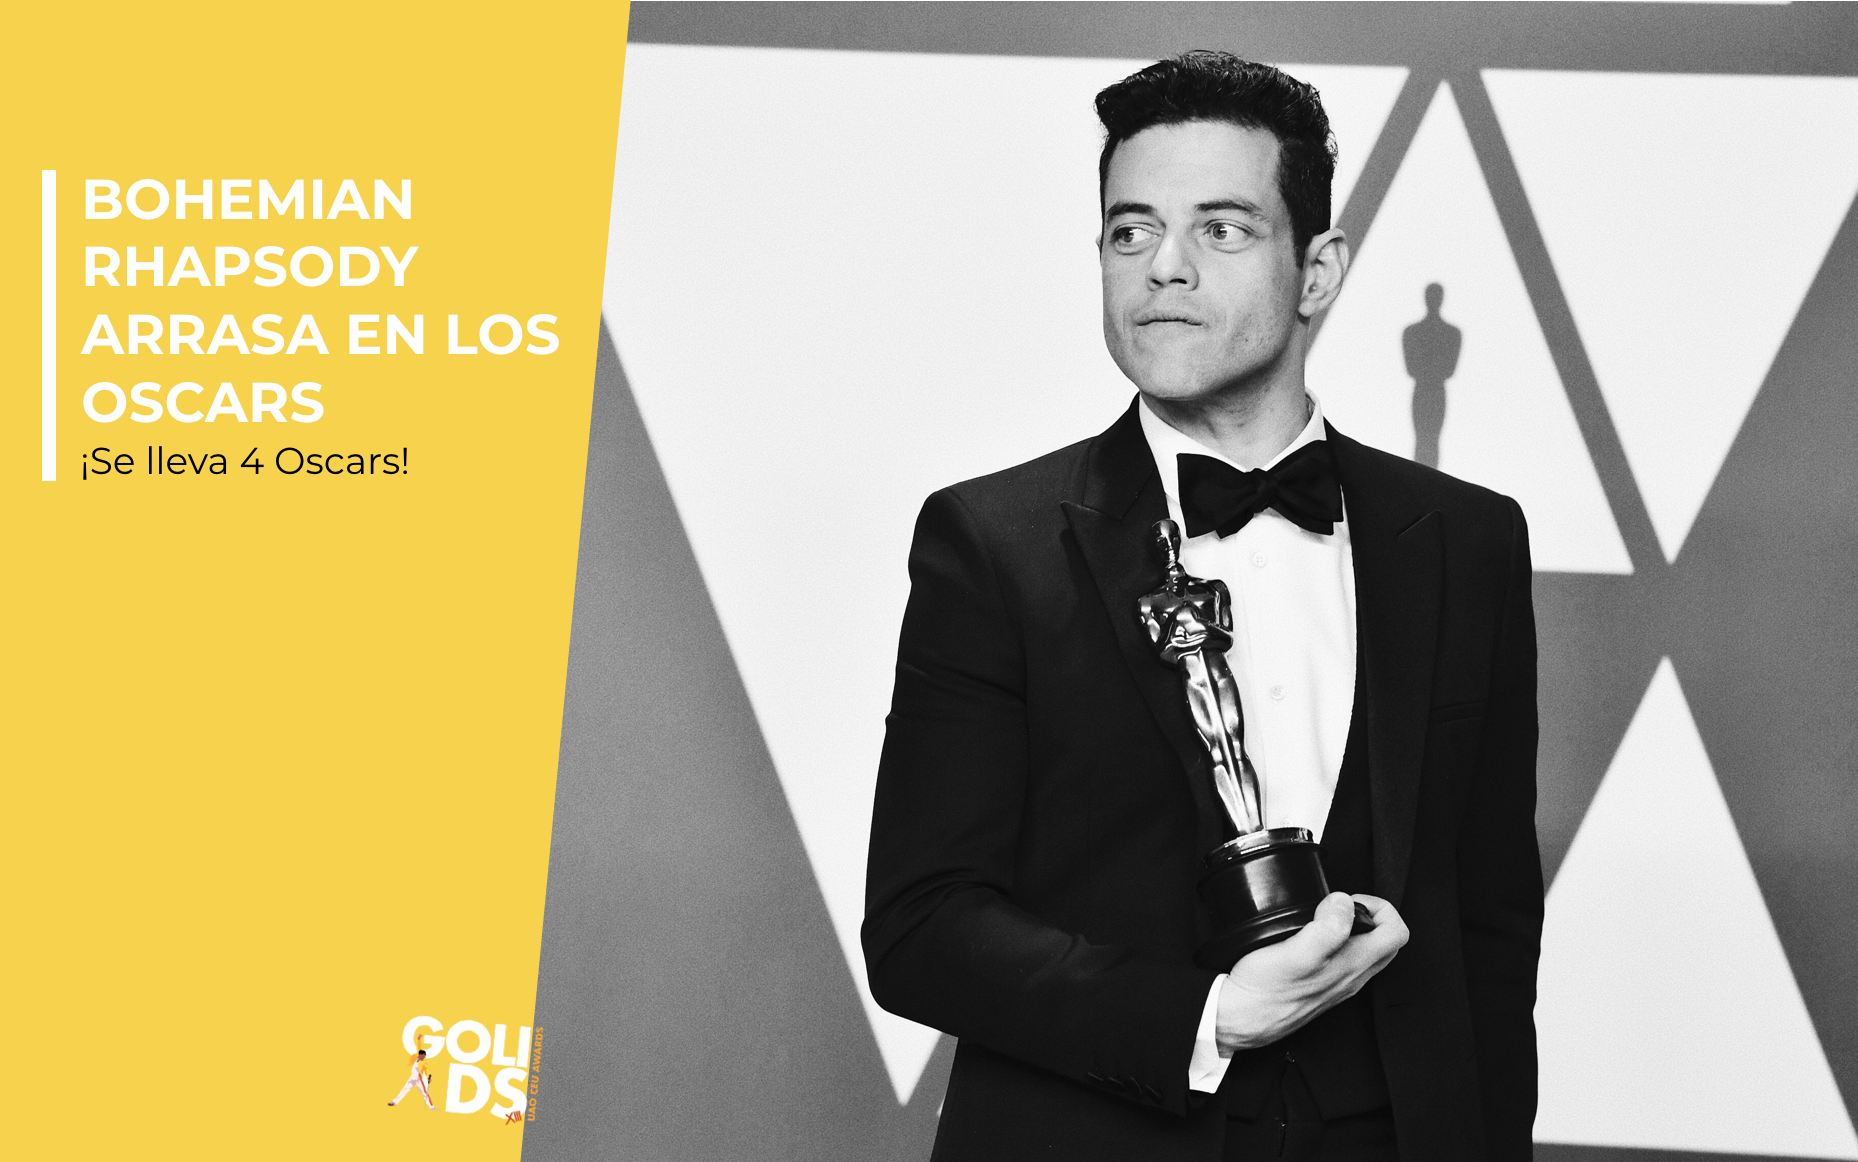 Bohemian Rhapsody arrasa en los Oscars